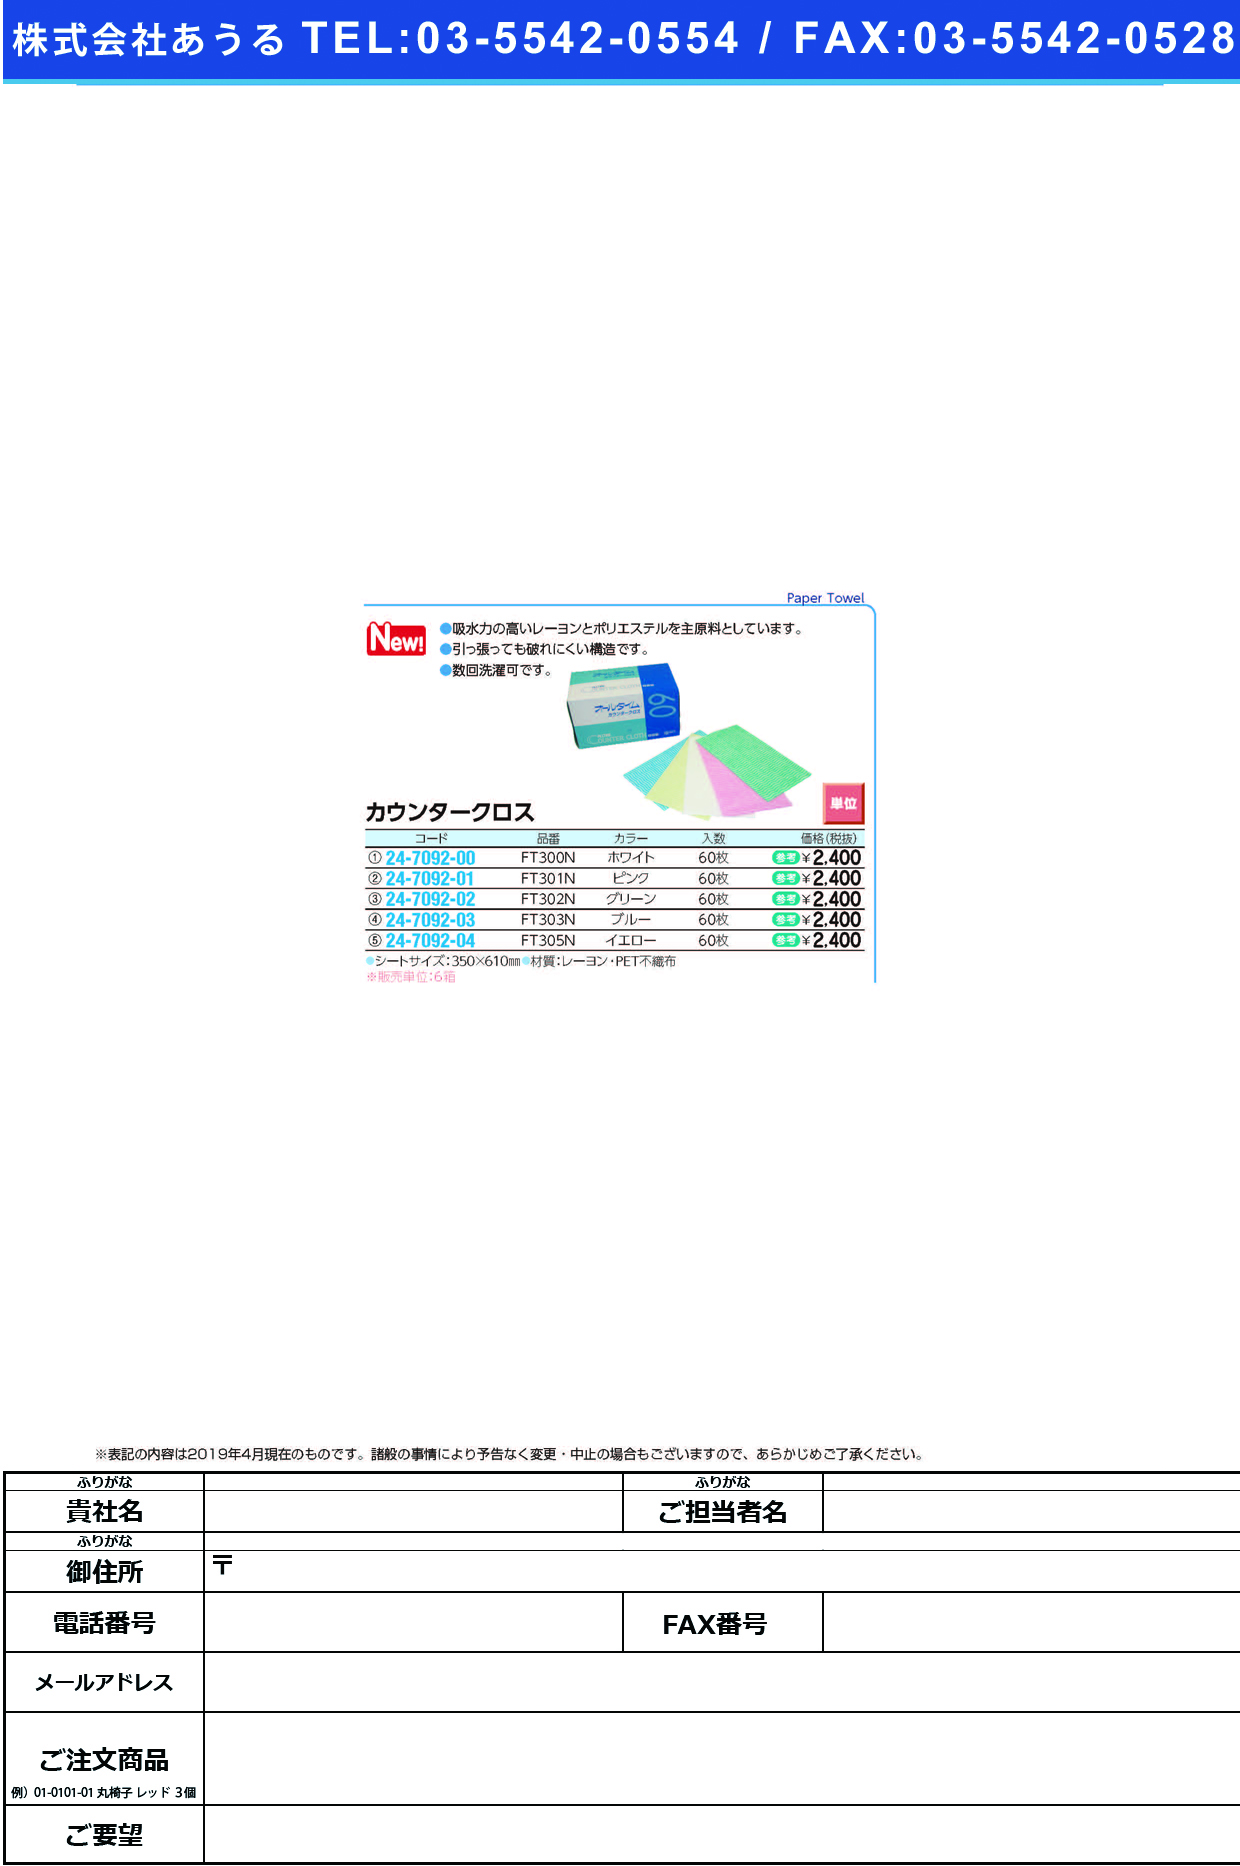 (24-7092-01)カウンタークロス（厚手）ピンクFT-301(350X610)60ﾏｲ ｶｳﾝﾀｰｸﾛｽｱﾂﾃﾞ(ﾋﾟﾝｸ)(東京メディカル)【6箱単位】【2019年カタログ商品】